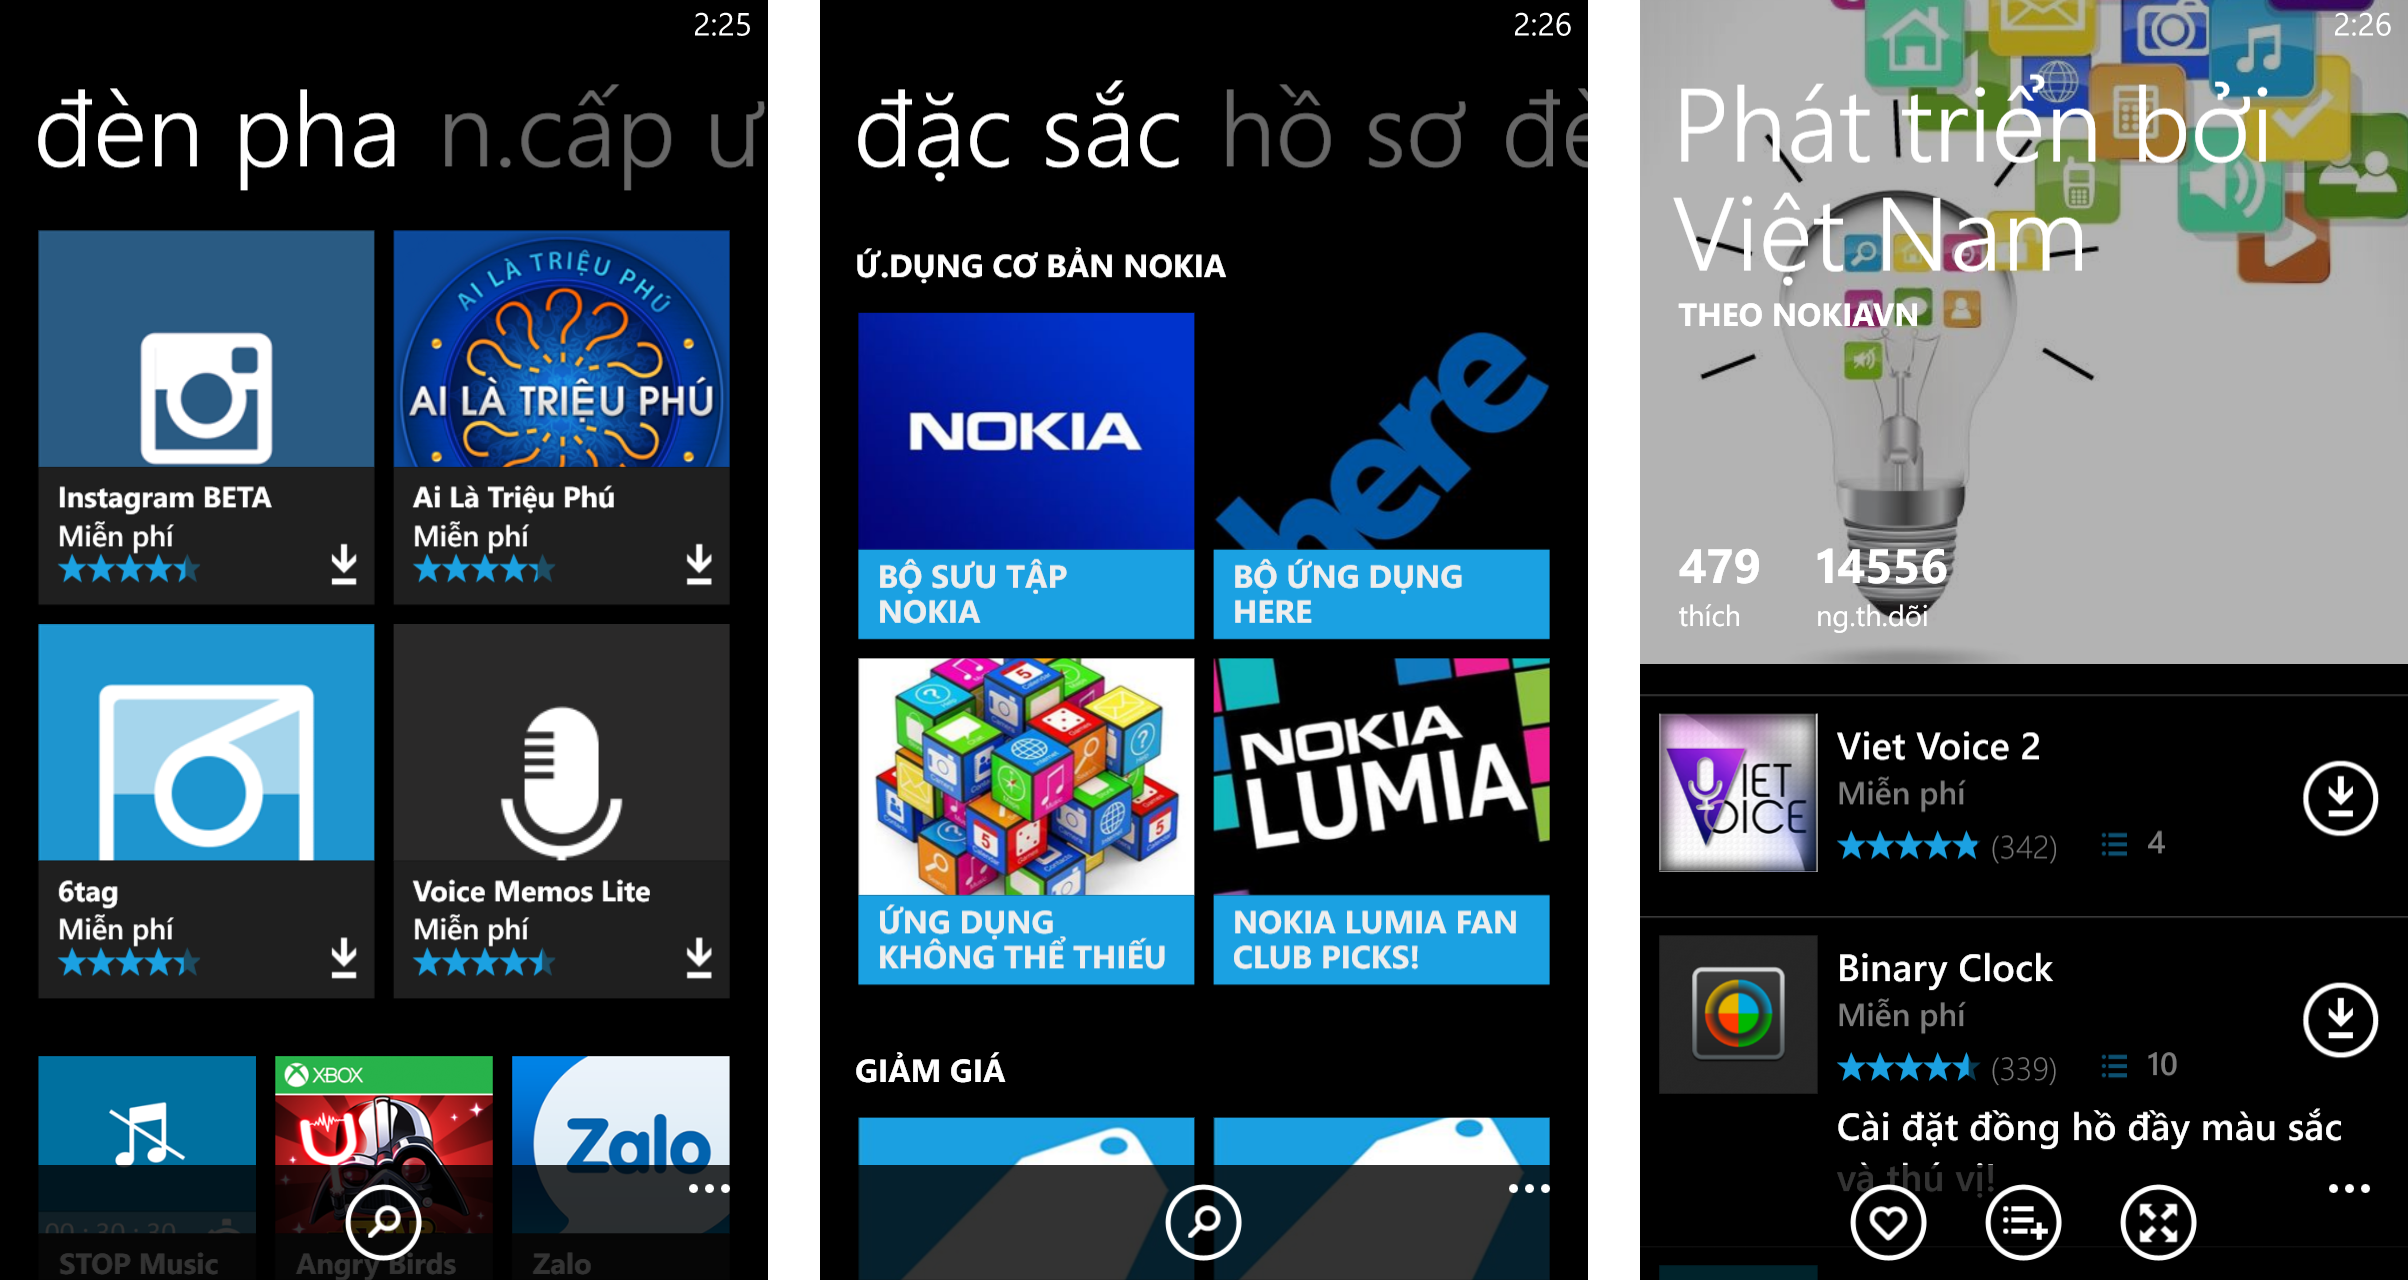 Nokia_App_Social.png